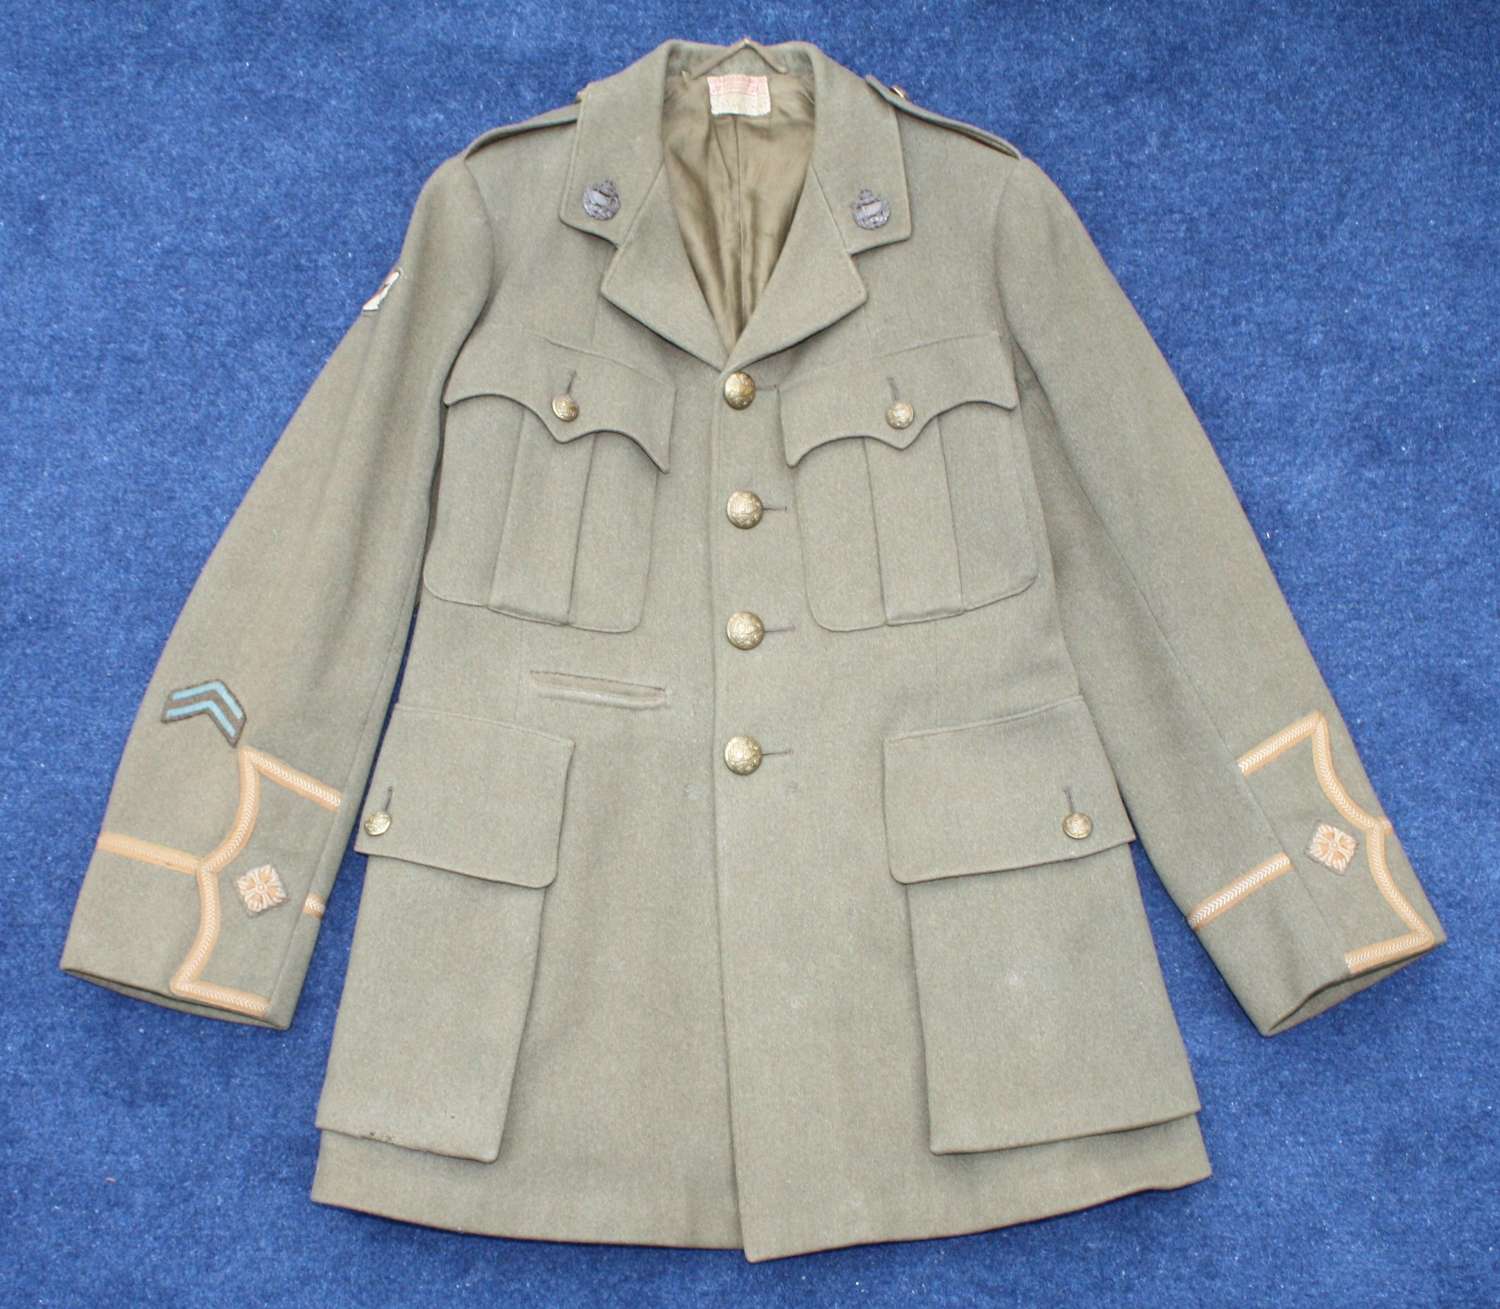 WW1 British Army Cuff Rank Tunic to a Tank Corps 2nd Lieutenant